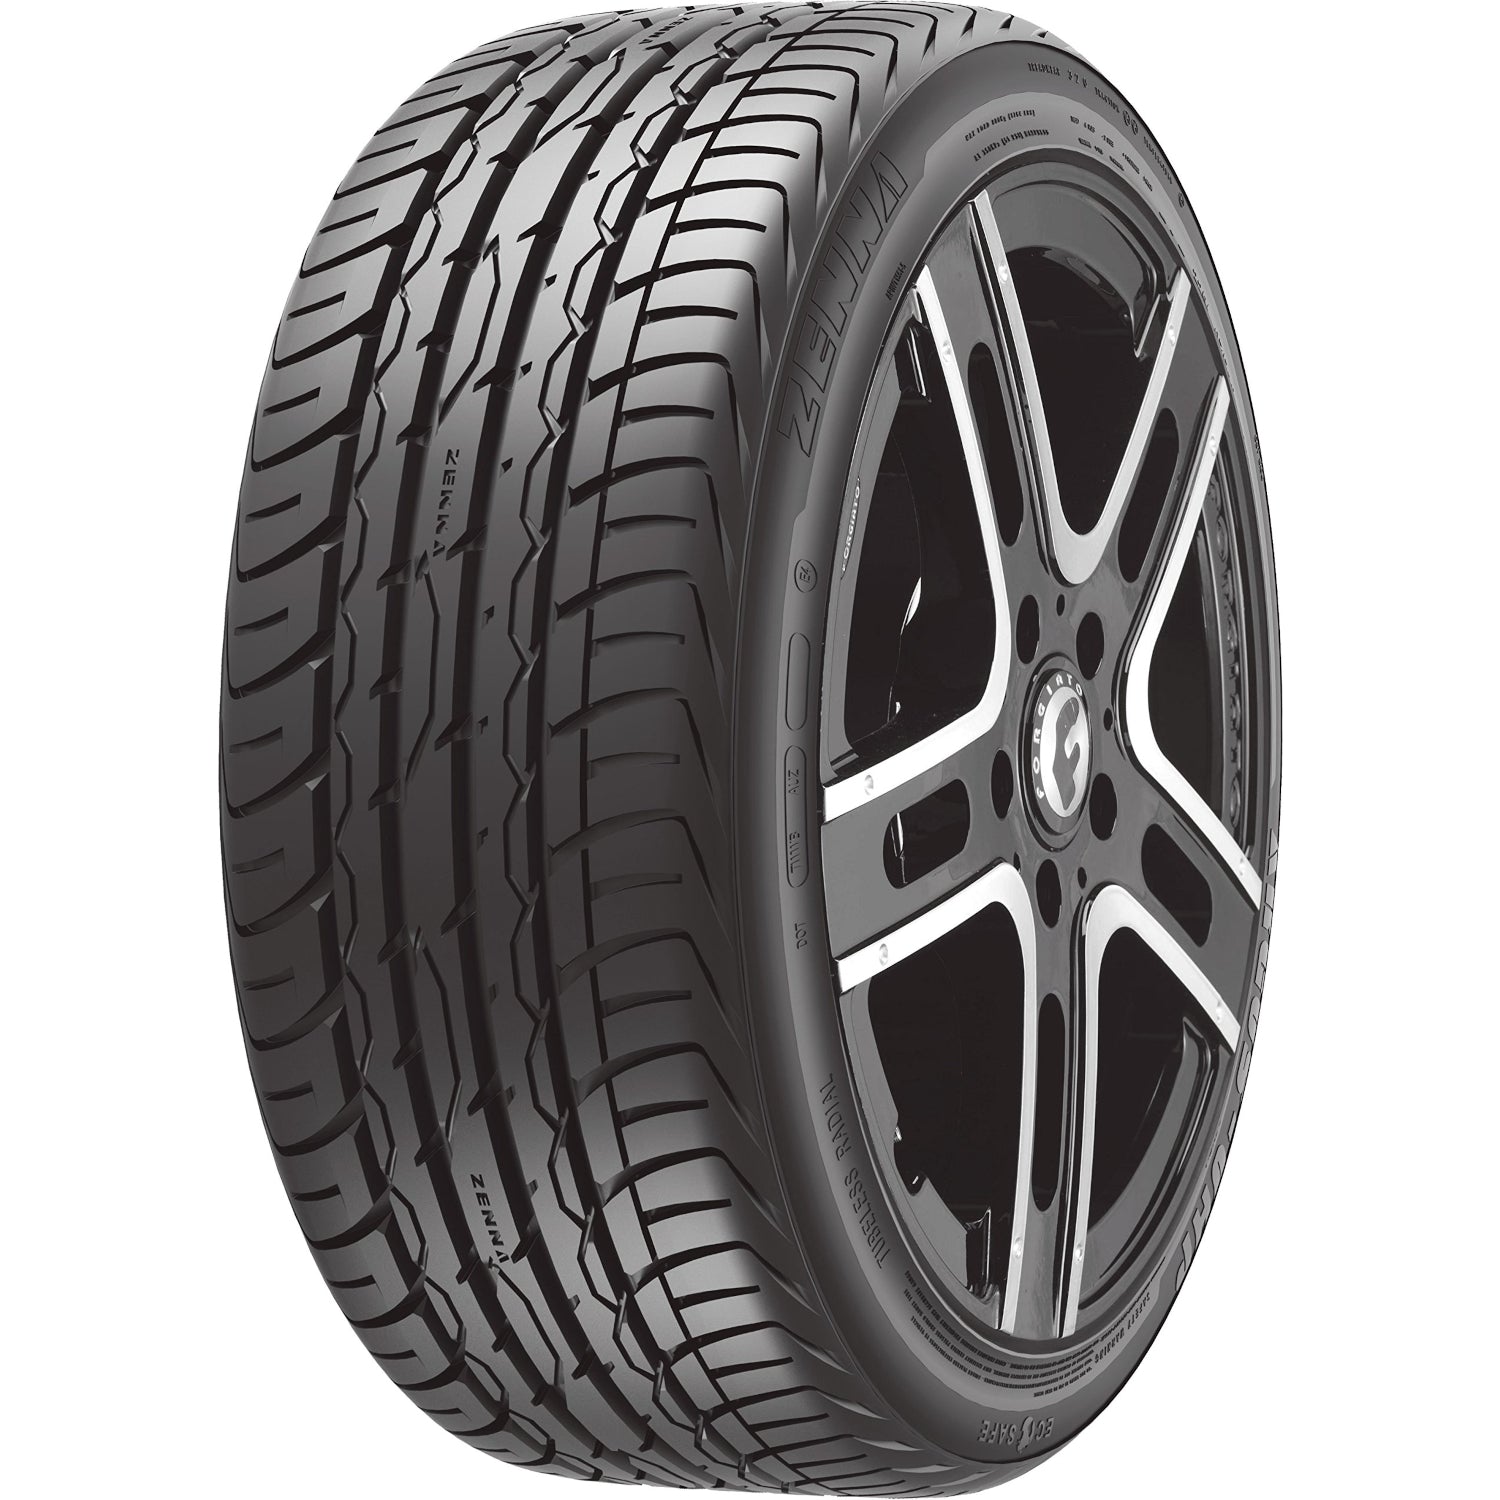 Zenna Argus UHP 265/30ZR22 (28.3x10.4R 22) Tires